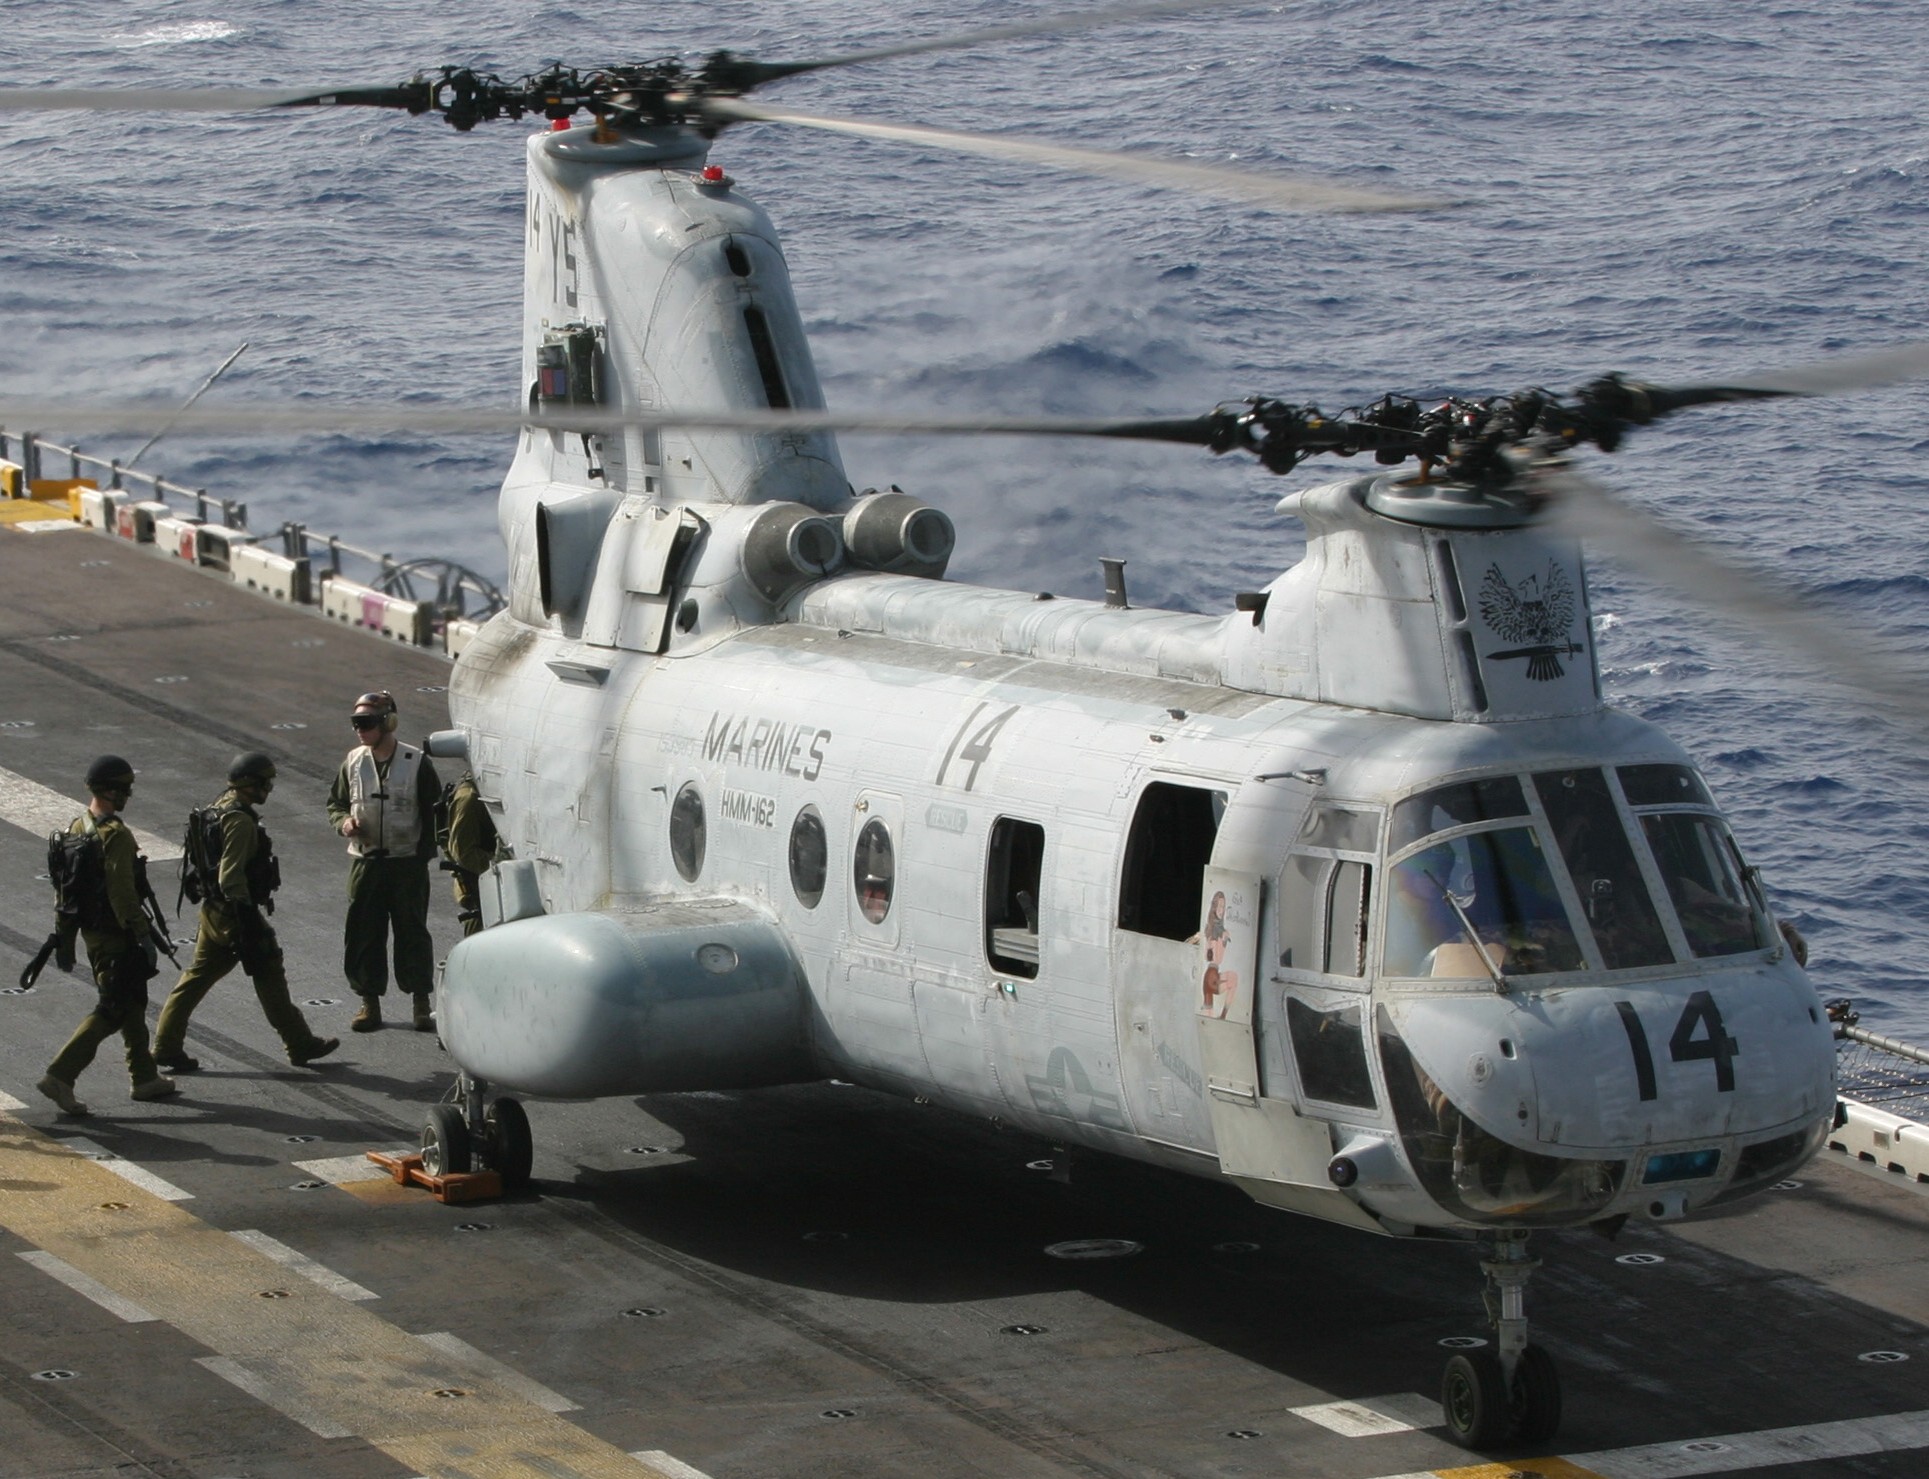 hmm-162 golden eagles marine medium helicopter squadron ch-46e sea knight usmc 59